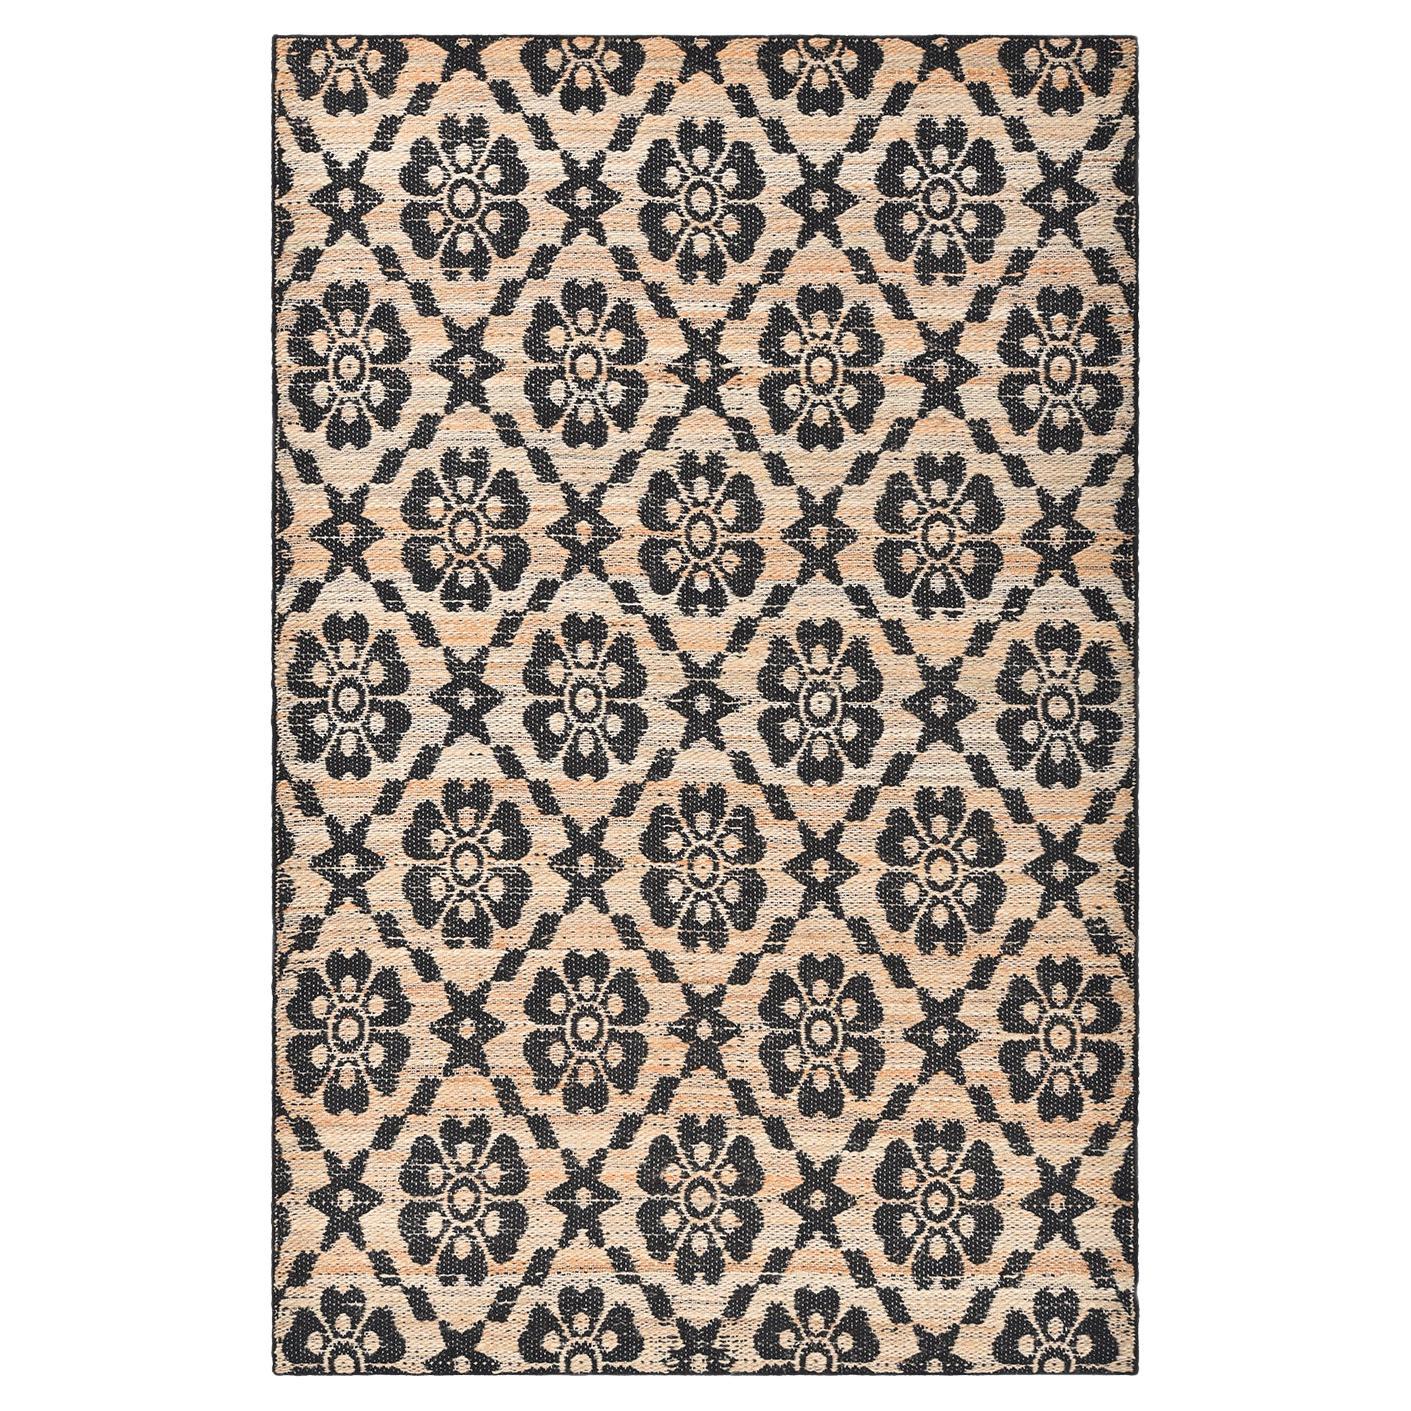 Transitional Jute-Teppich mit Blumenmuster, handgewebt, braun, 5 x 8